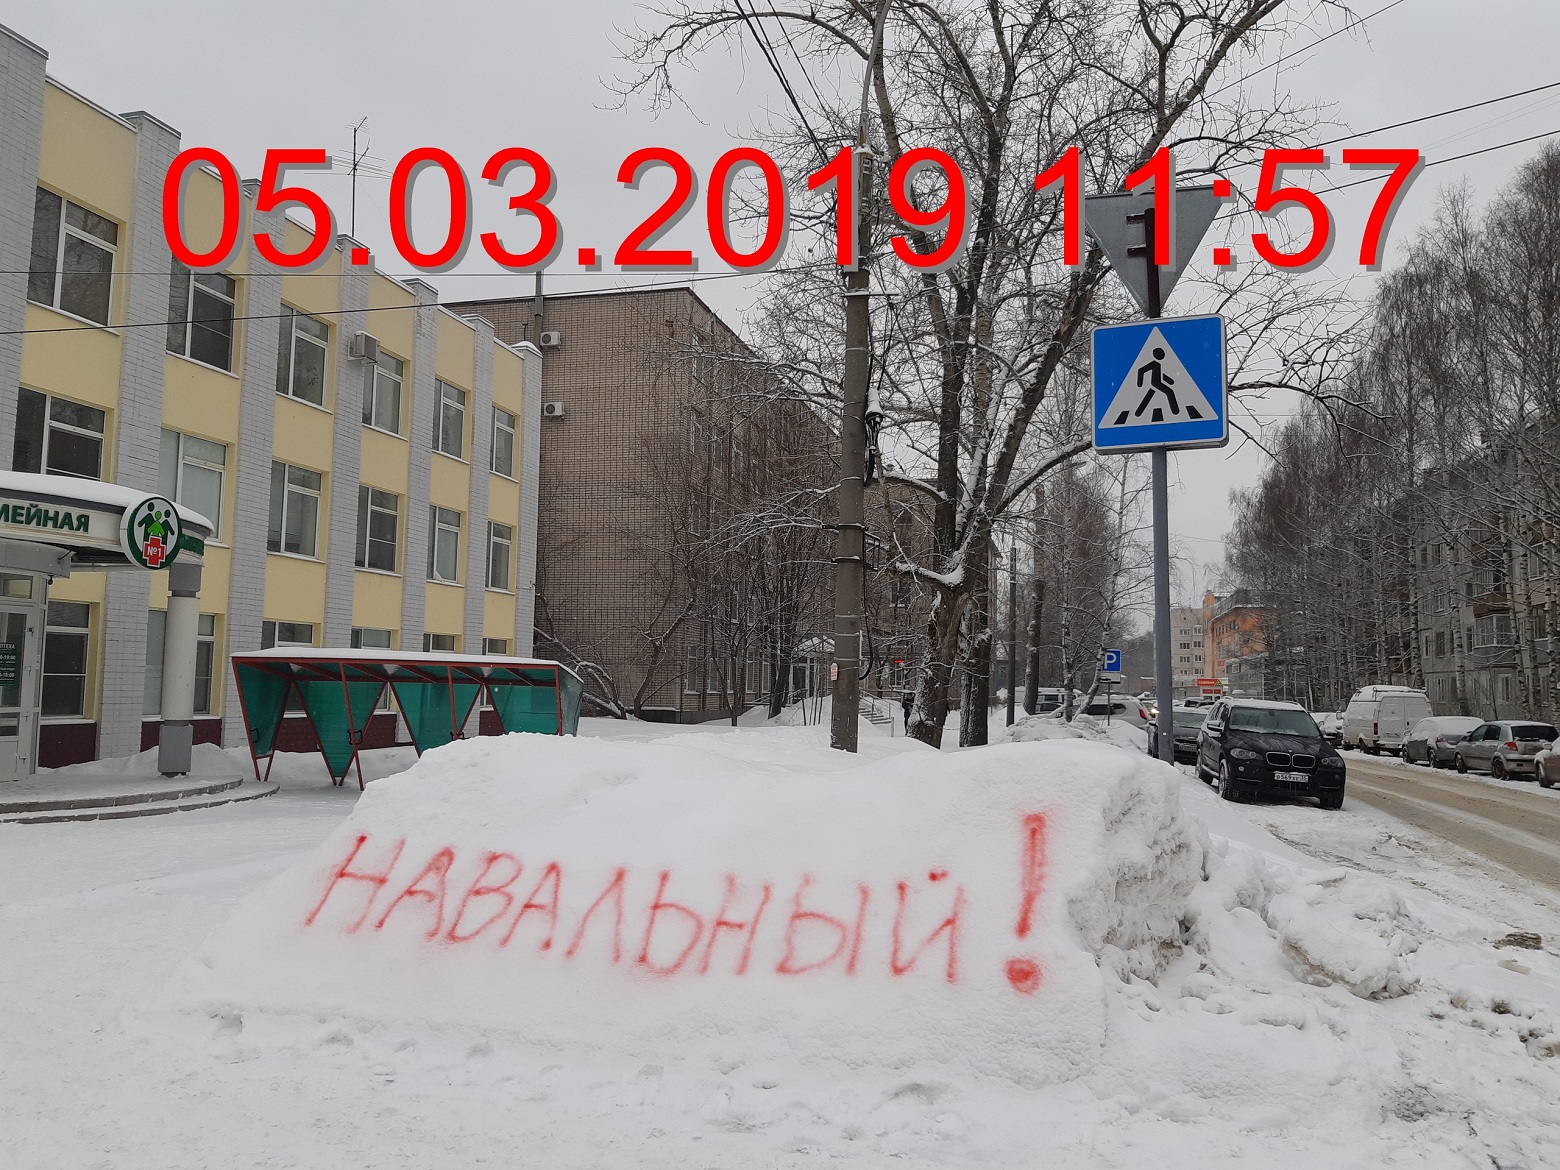 Навальный на снегу. Сугроб Навальный. Надпись Навальный на снегу Вологда фото. Навальный сугроб Митино.